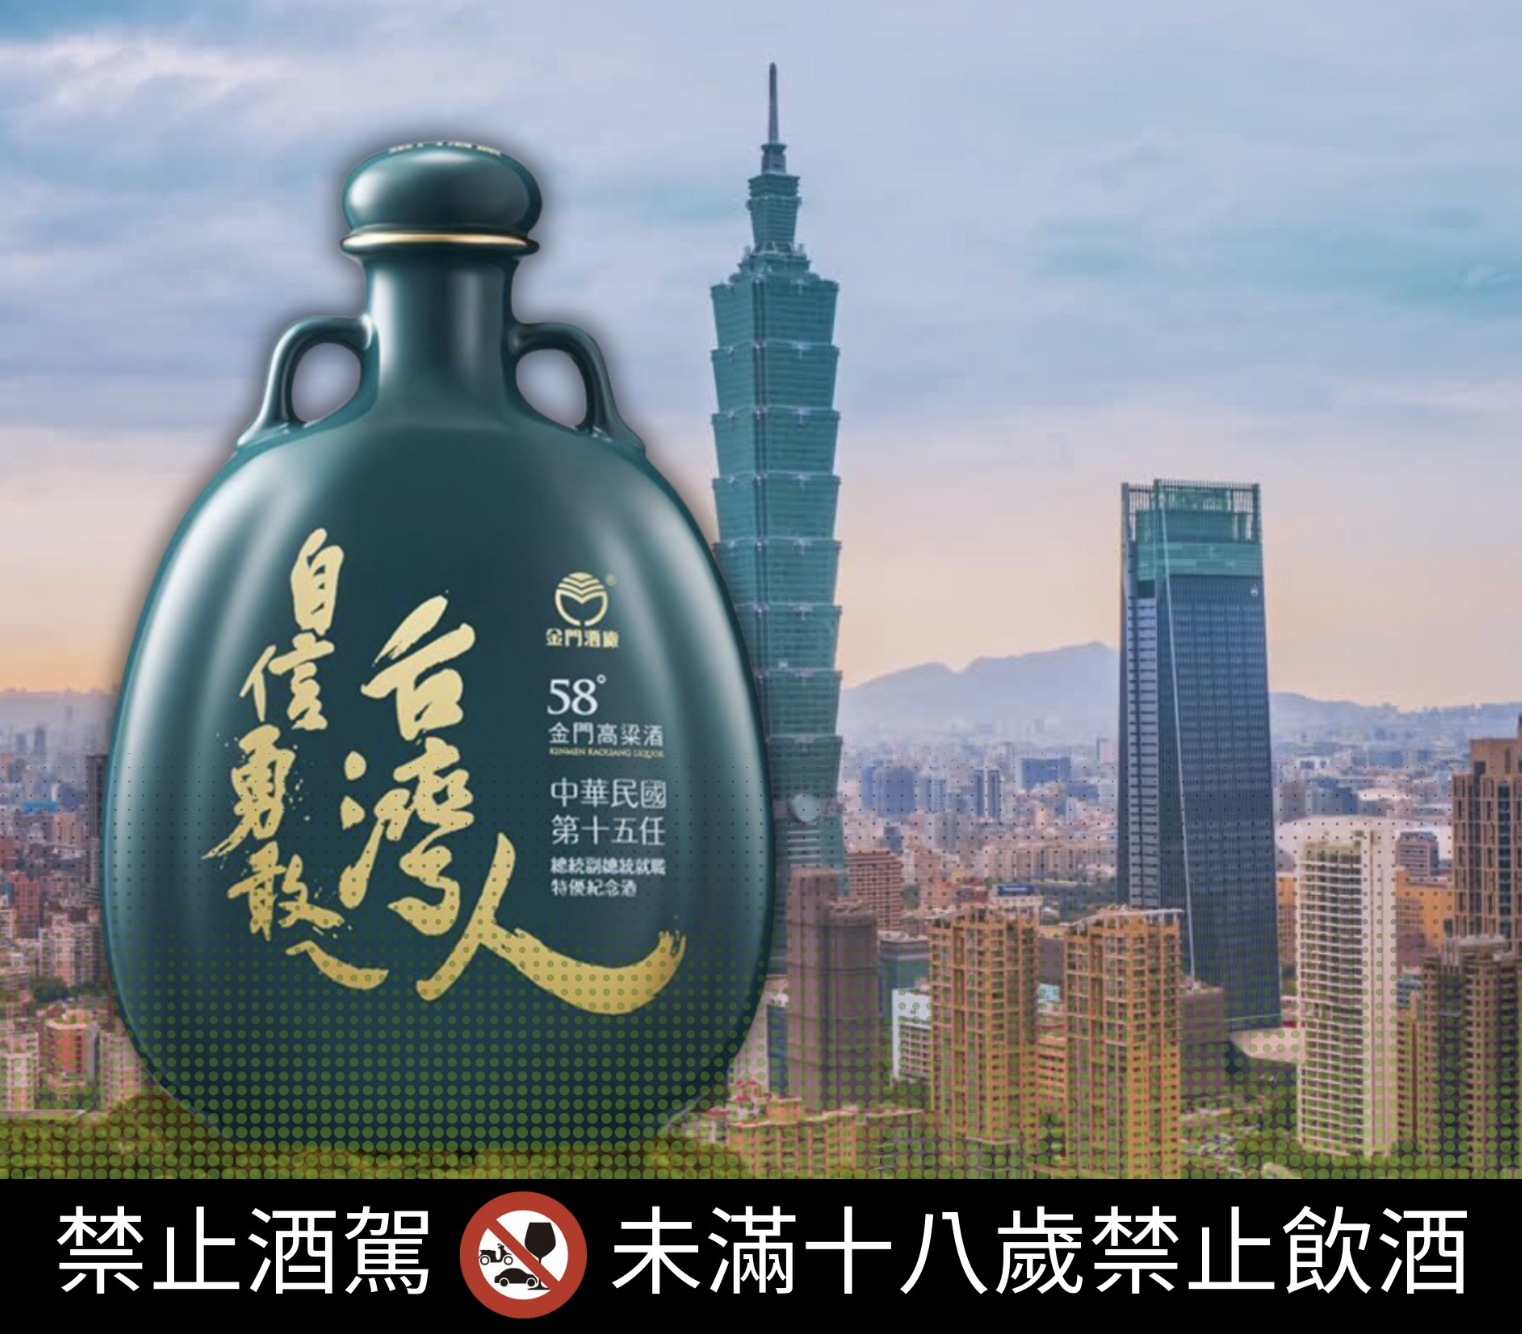 2020年520總統就職紀念酒 自信勇敢ㄟ台灣人 自信勇敢台灣人 小英版